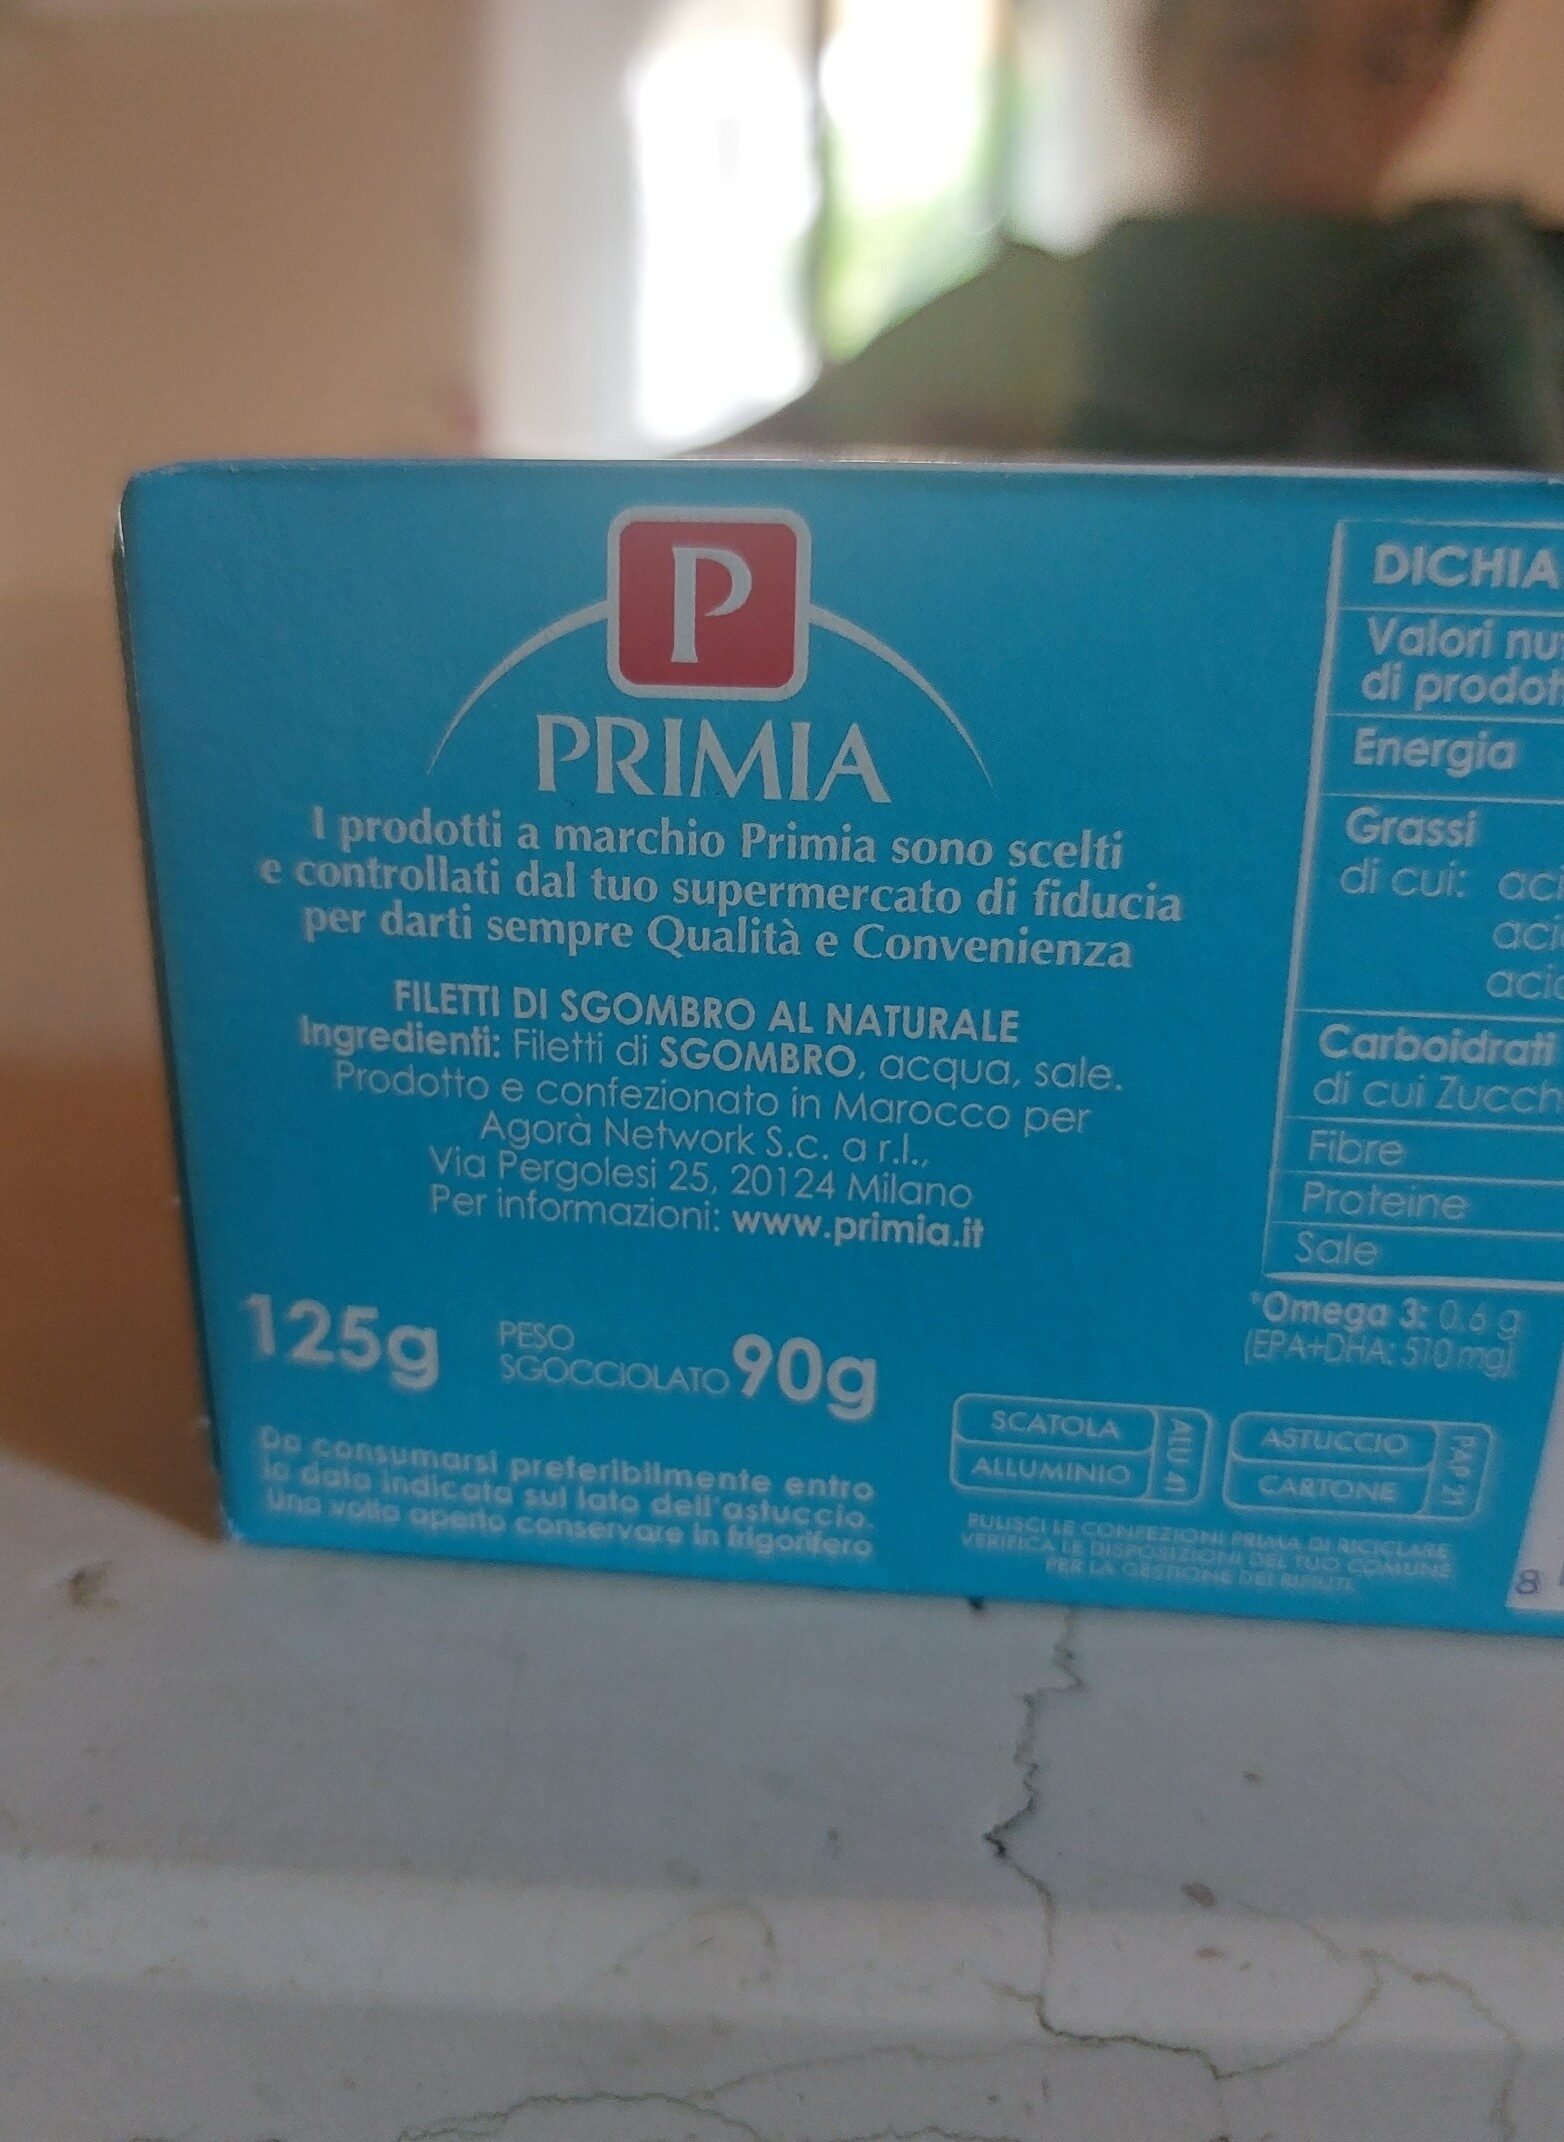 Filetti di Sgombro al naturale - Ingredients